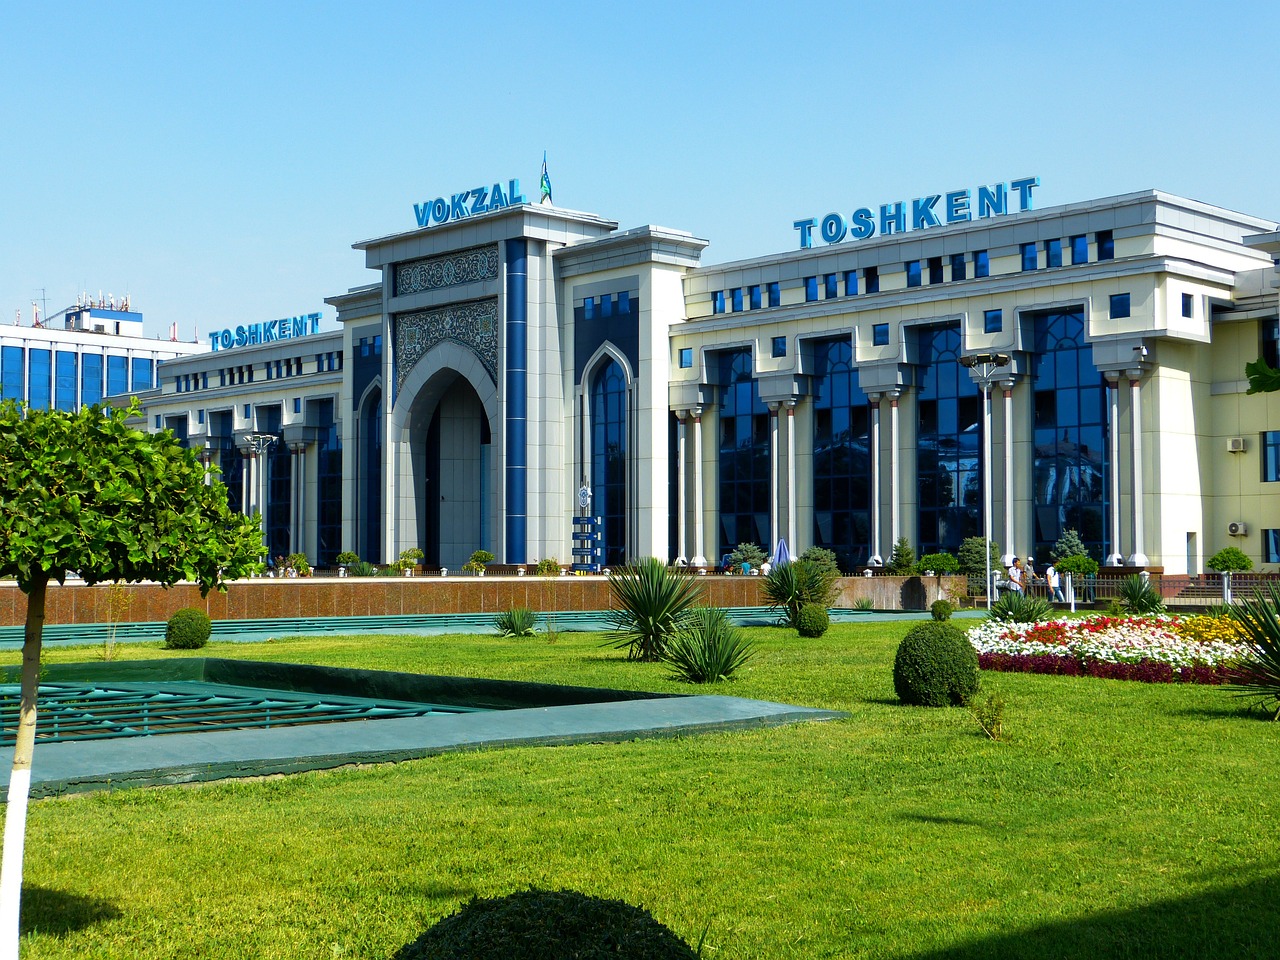 Modern Tashkent Delights in 2 Days